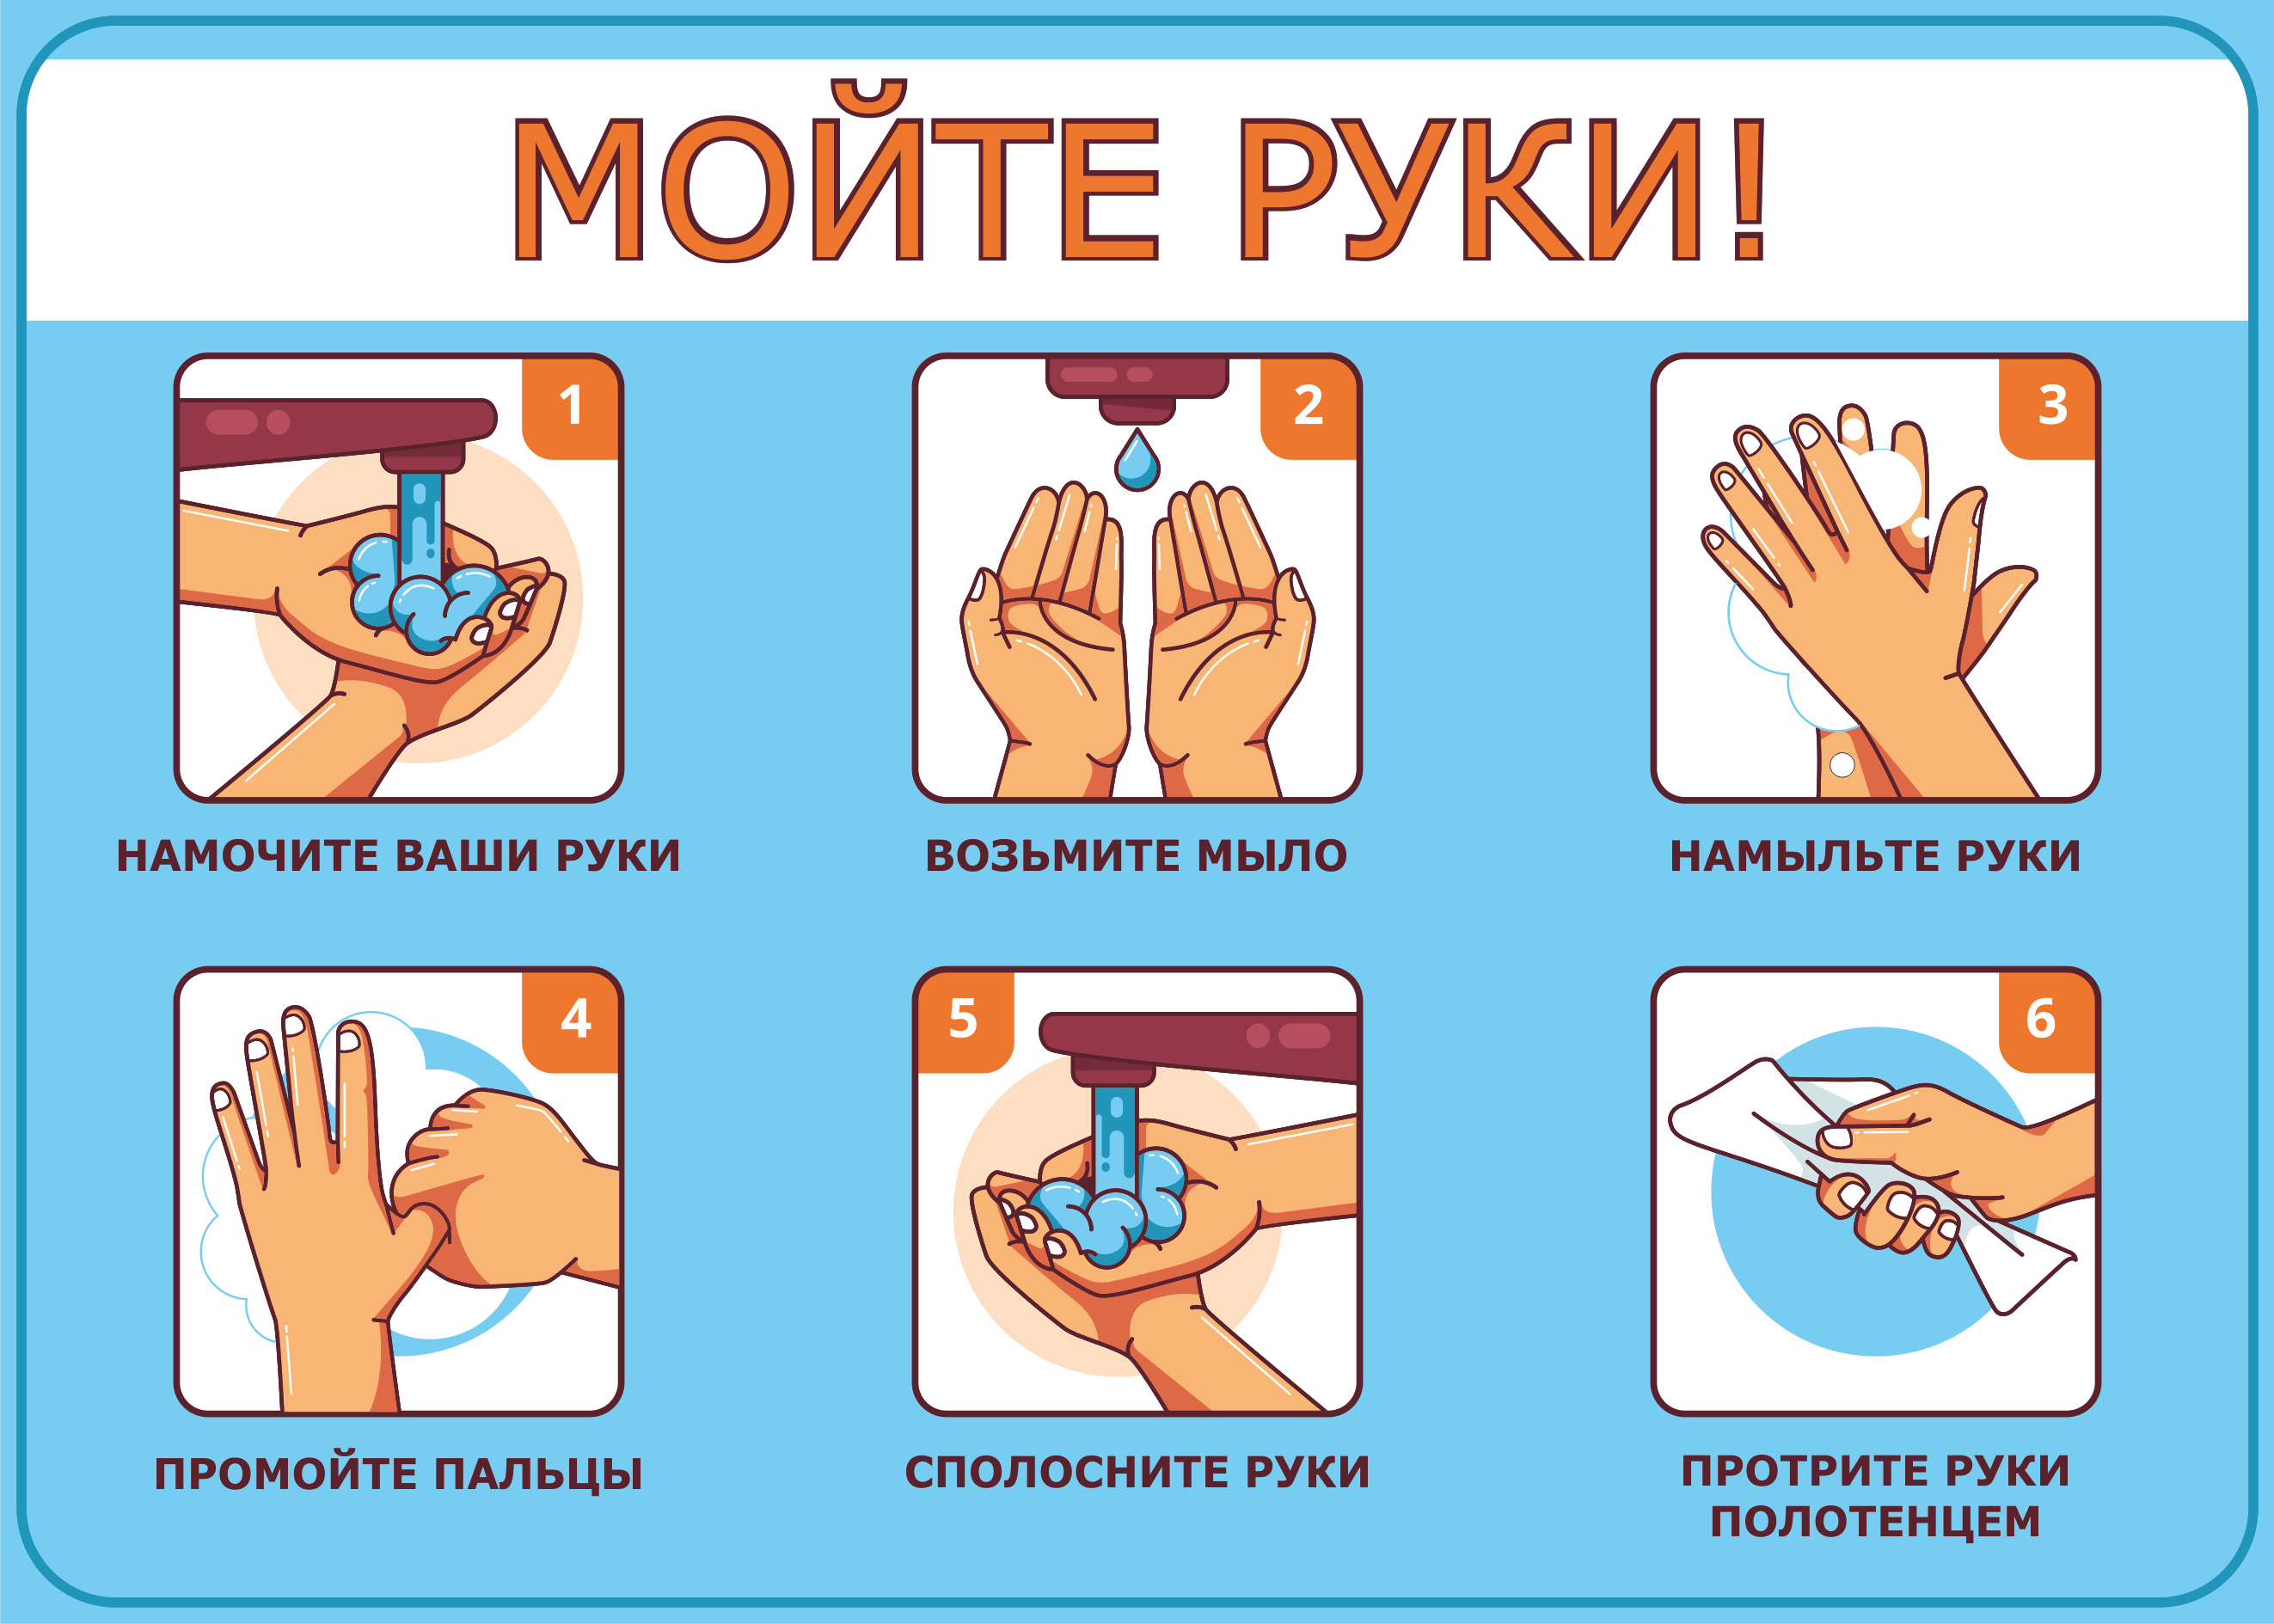 Про мытье рук. Алгоритм мытья рук. Мойте руки. Алгоритм мытья рук в детском саду. Плакат как правильно мыть руки.